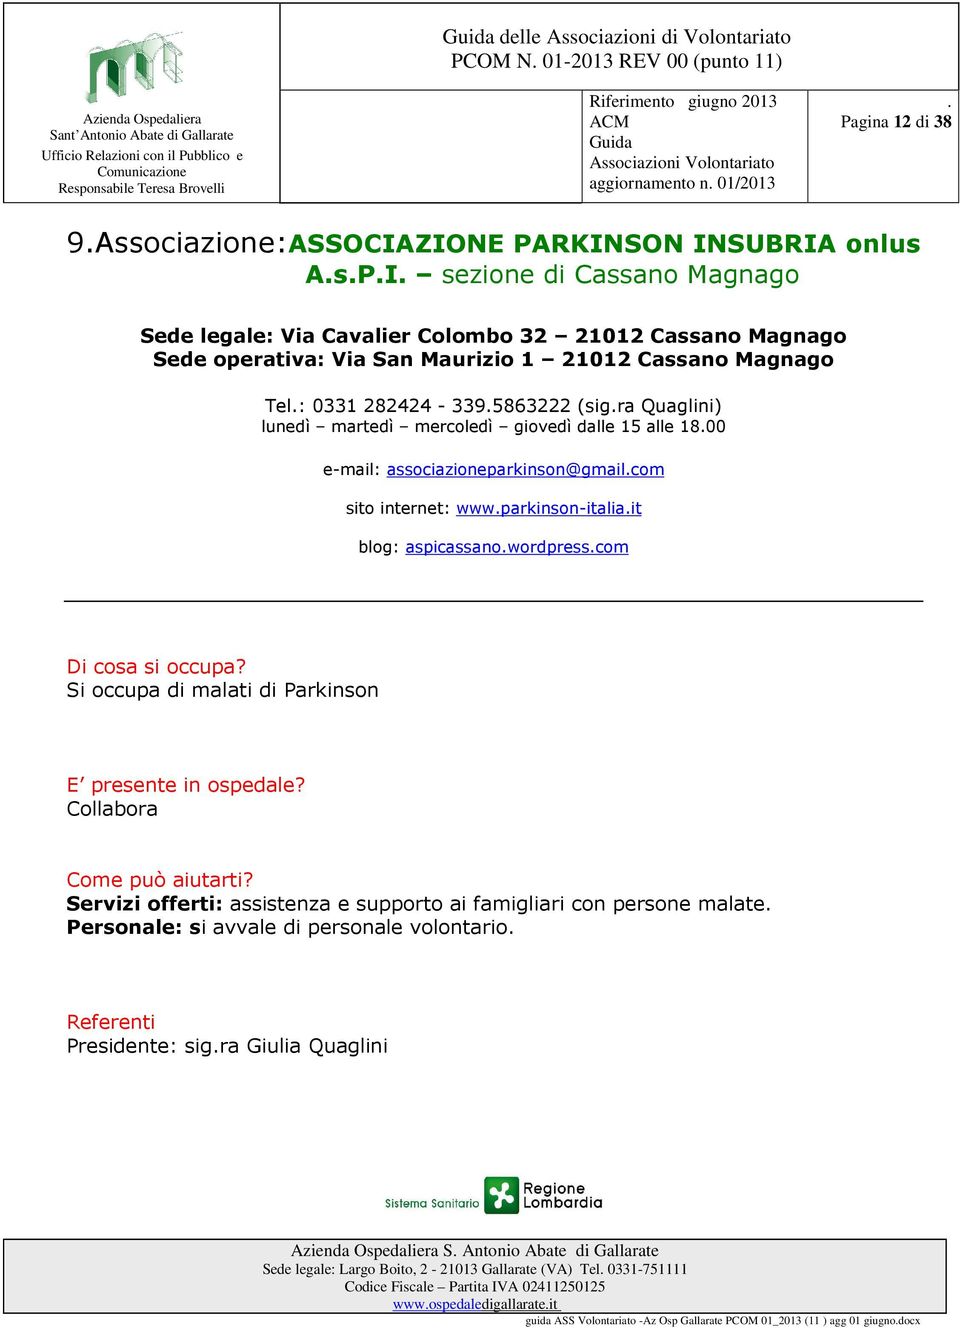 associazioneparkinson@gmailcom sito internet: wwwparkinson-italiait blog: aspicassanowordpresscom Si occupa di malati di Parkinson Collabora Servizi offerti: assistenza e supporto ai famigliari con